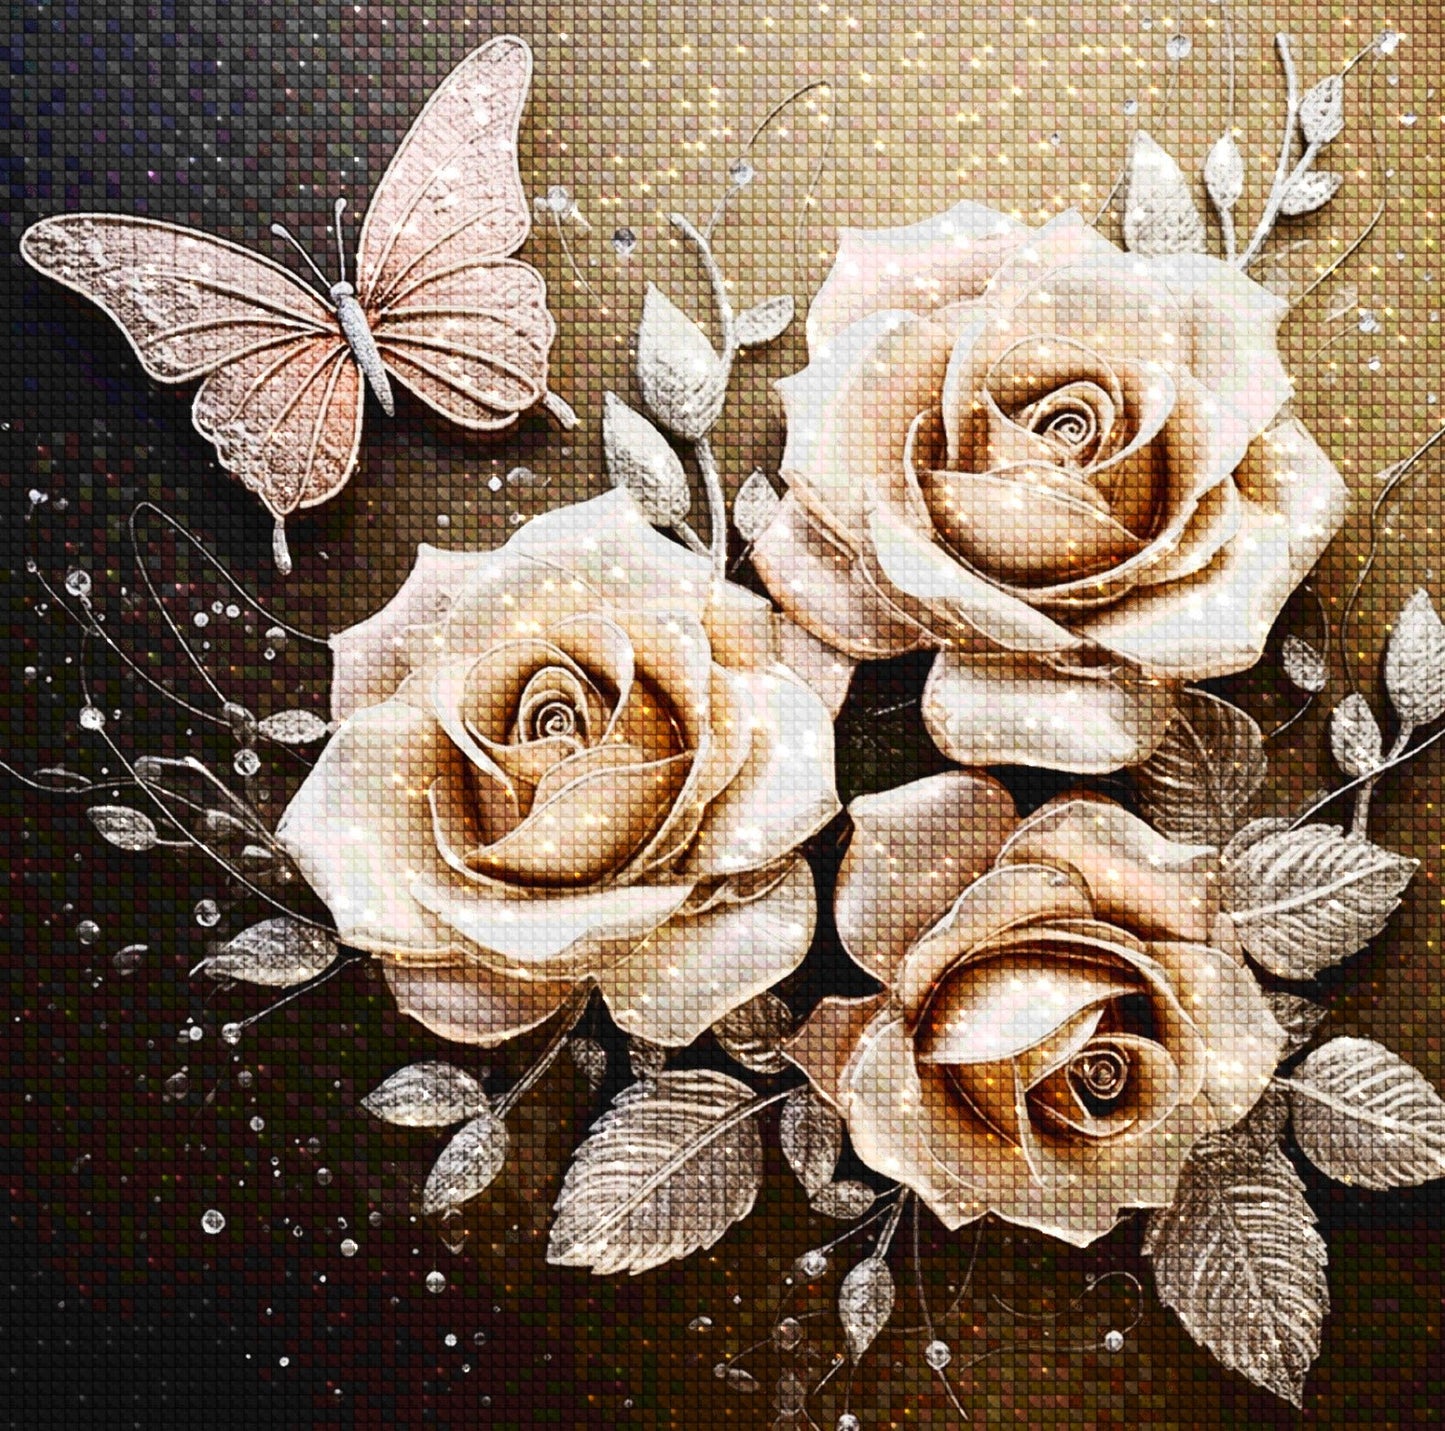 Bronze Rose - Diamond Painting Kit - Artslo.com